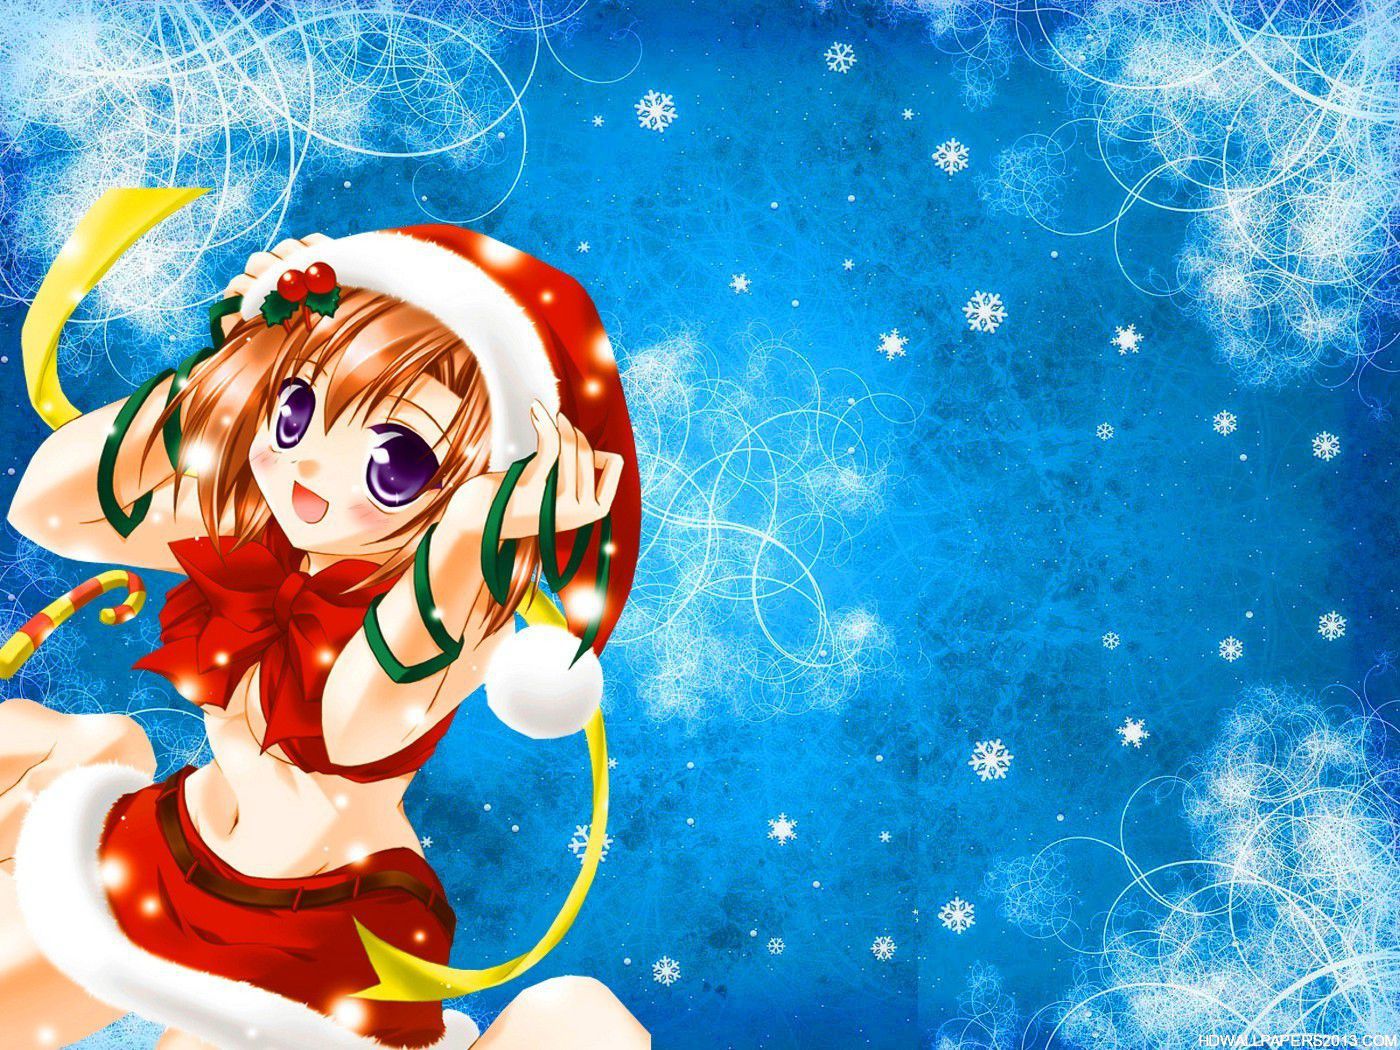 Hot Anime Girl Wallpapers Hd - Anime Girl Christmas Gif - 1400x1050  Wallpaper 